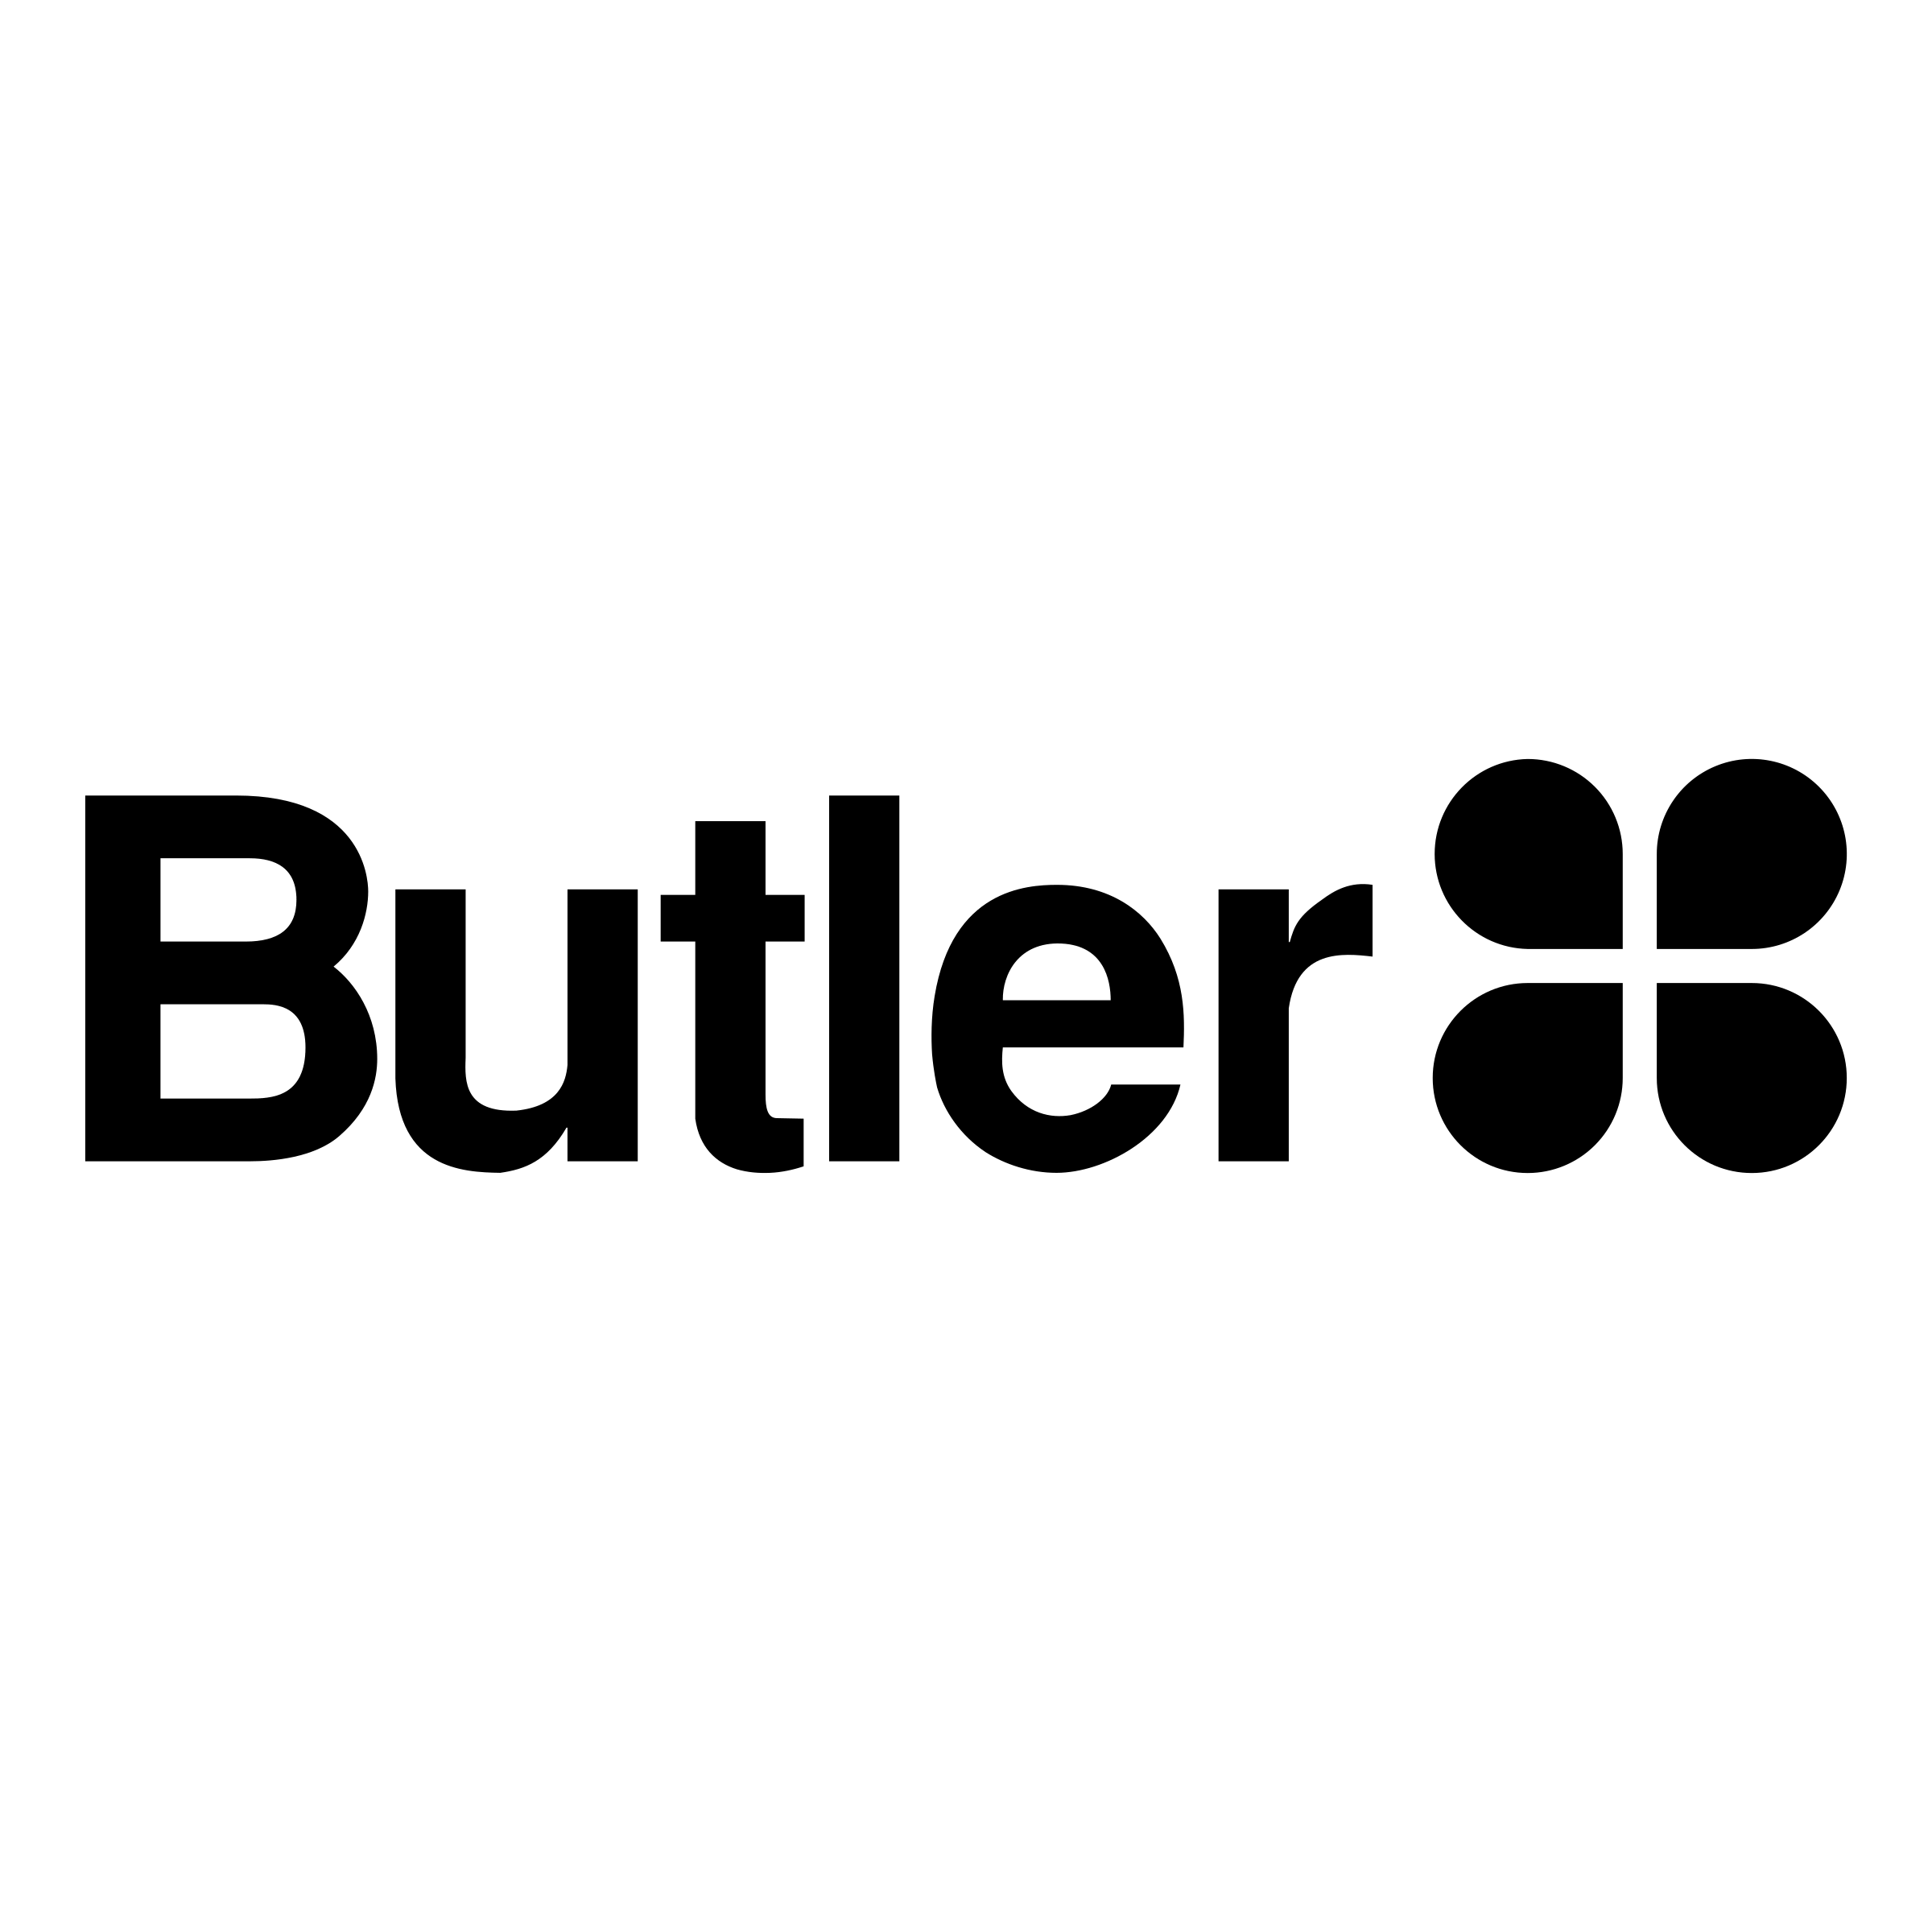 Butler Logo - Butler Logo PNG Transparent & SVG Vector